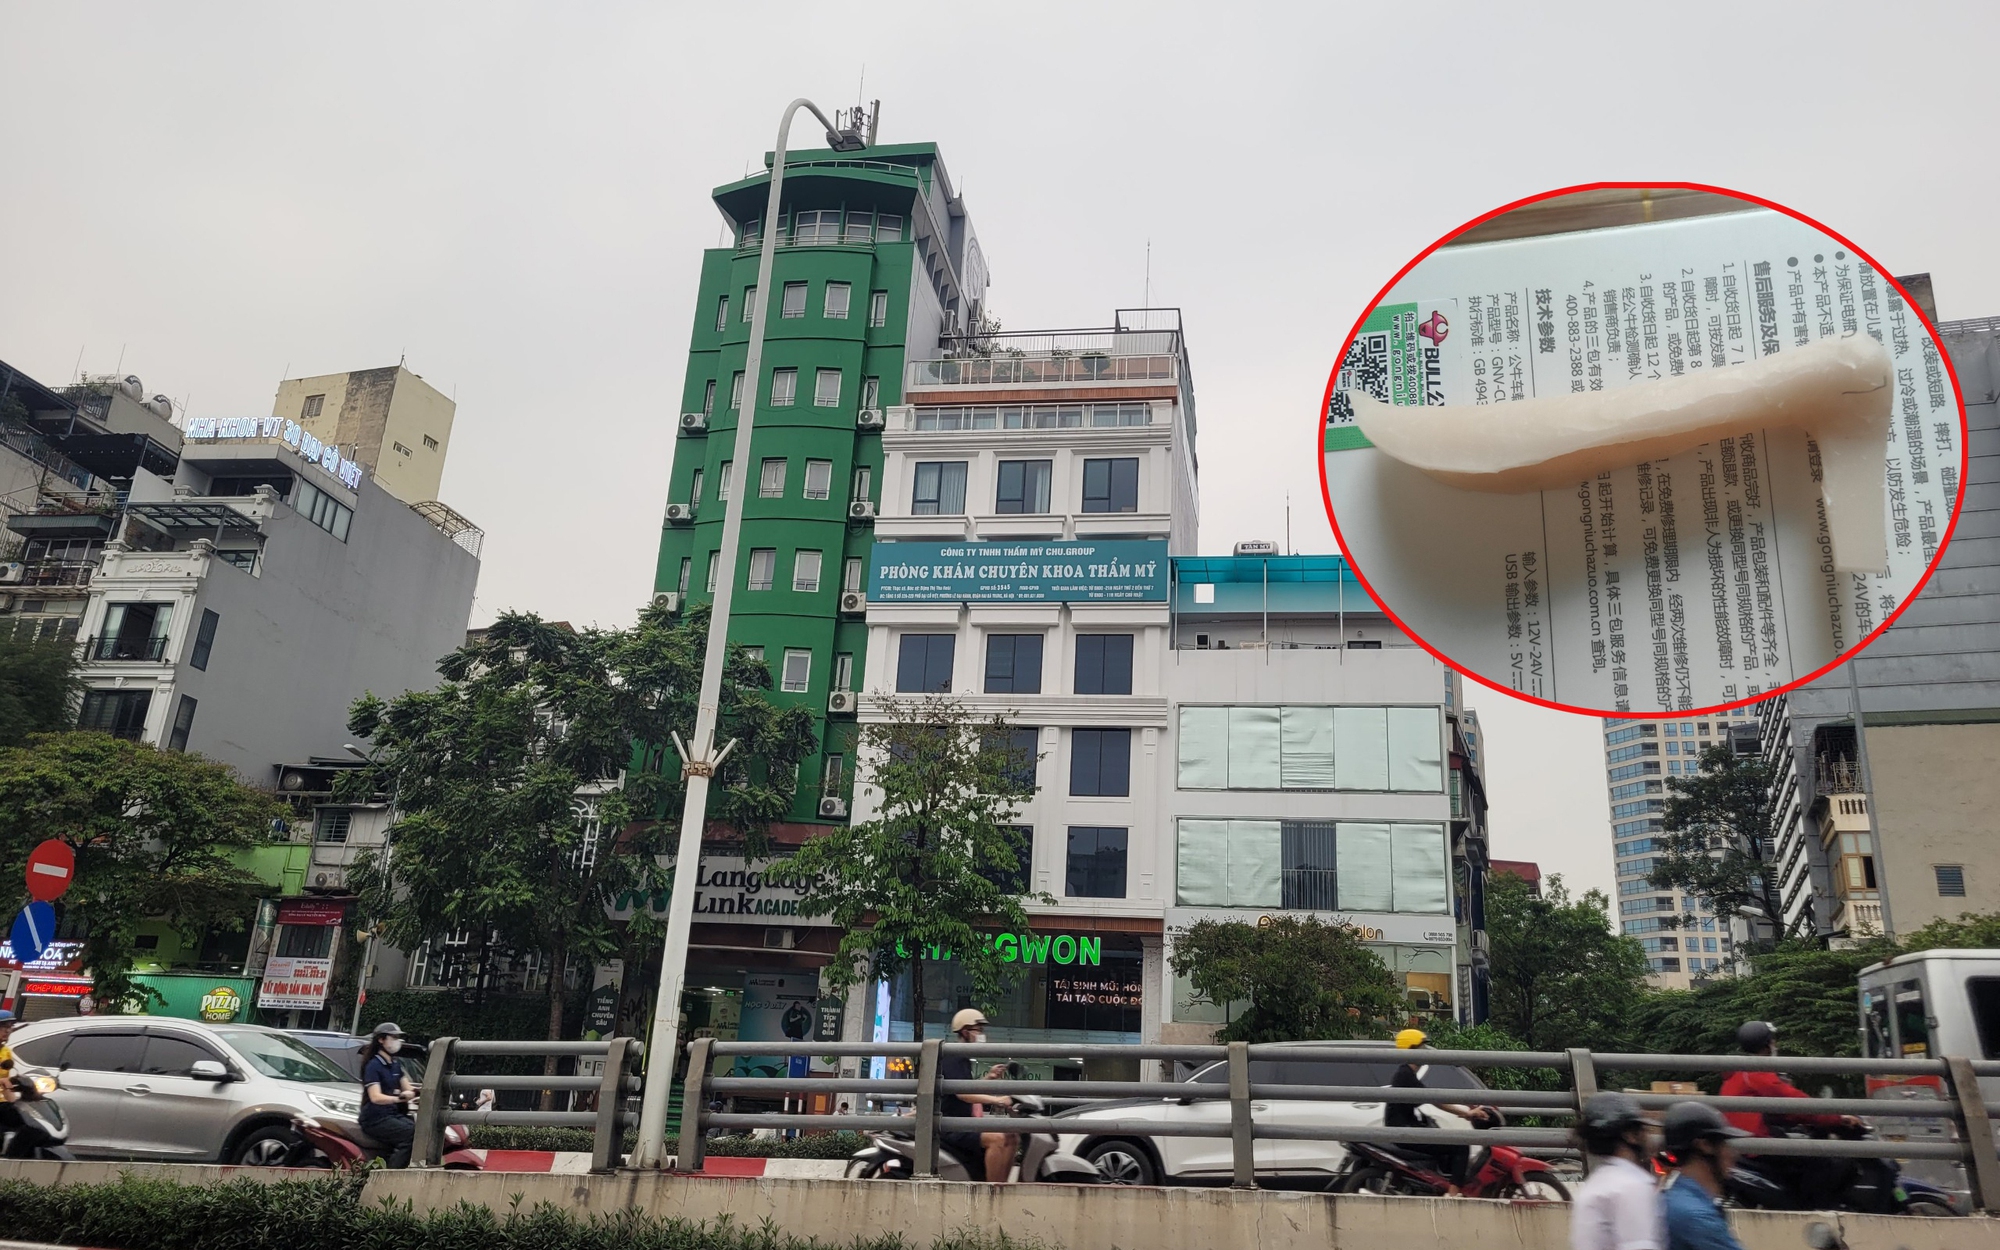 Thảm họa làm đẹp khi đến nhầm chỗ (bài 11): Nạn nhân nâng mũi thứ 9 của Changwon bị giữ sổ tiết kiệm, có nhà không dám về